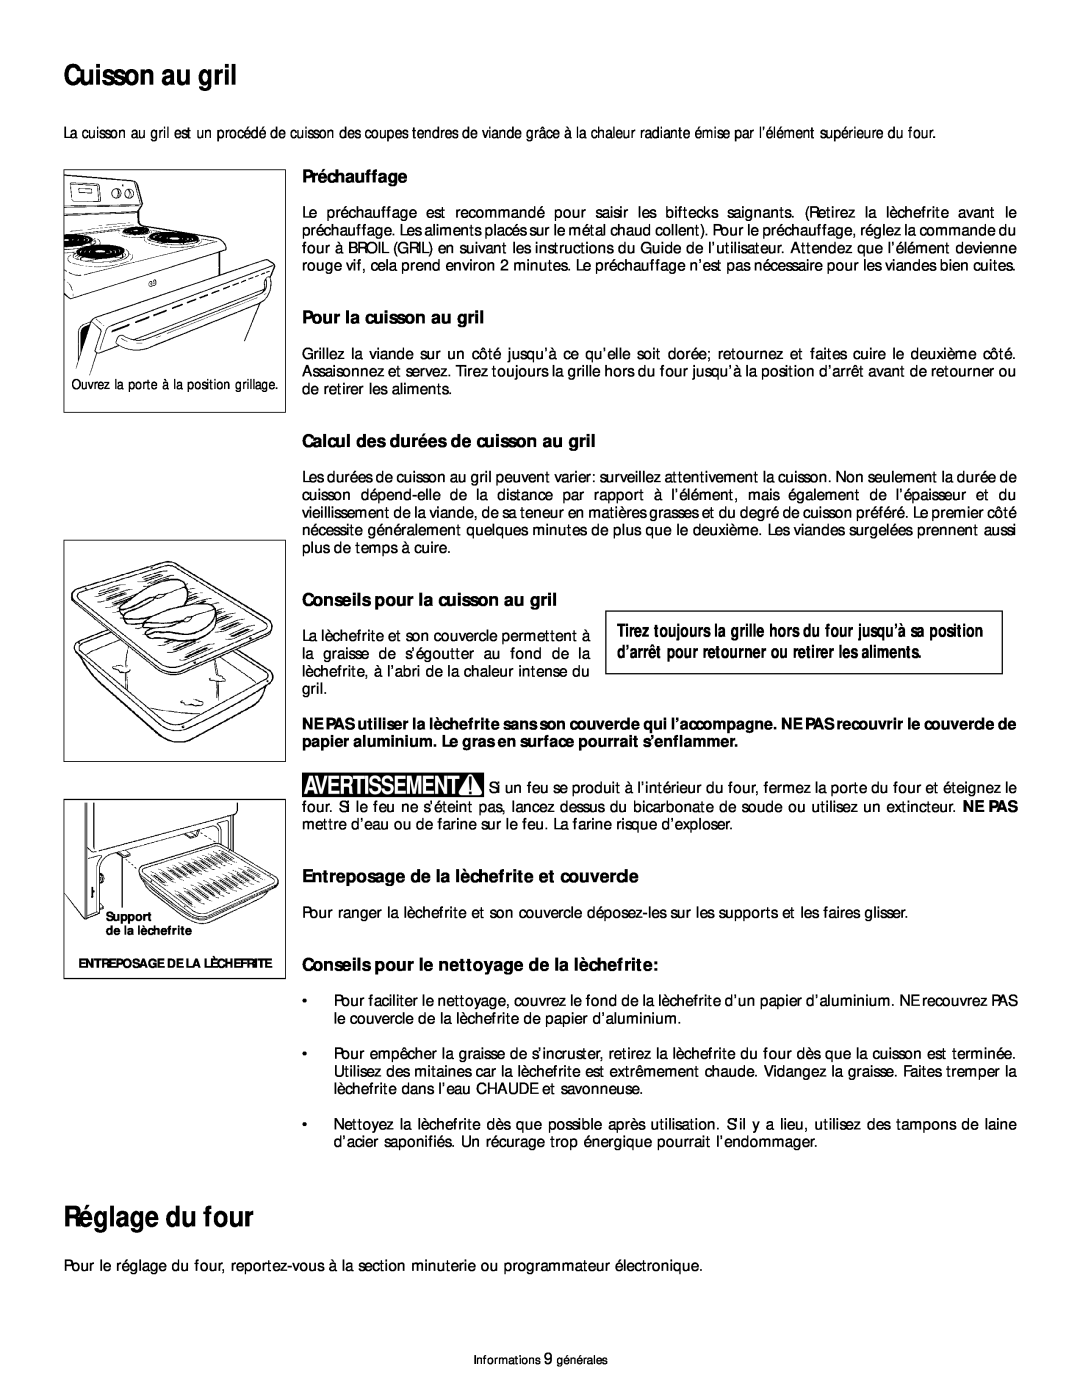 Frigidaire 318200404 manual Cuisson au gril, Réglage du four, Préchauffage, Pour la cuisson au gril 